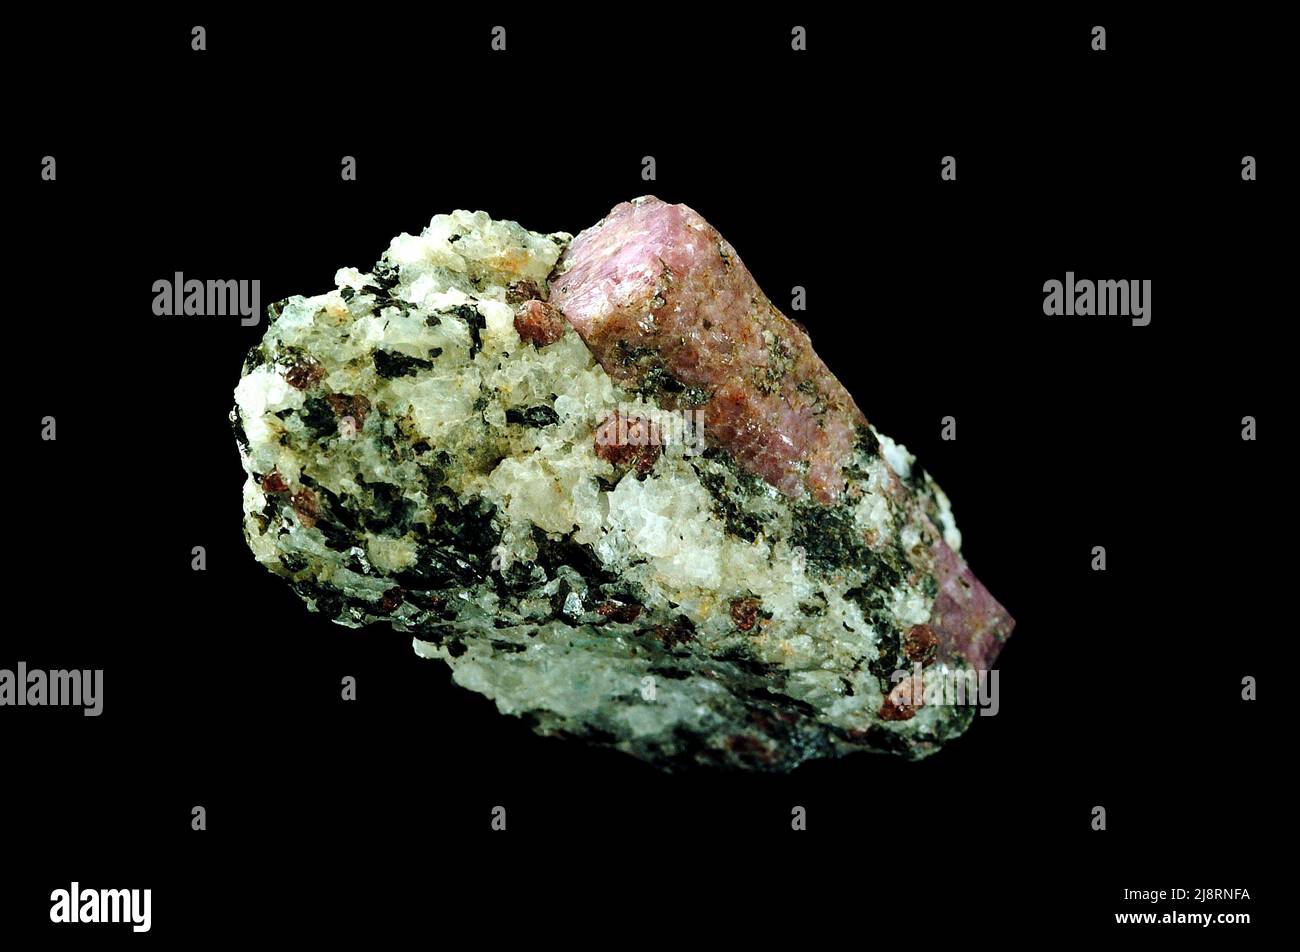 Il corindone, Al2O3, è disponibile in molti colori. A volte è gemmy ed ha valore come gemma (rubino o zaffiro), ma i cristalli in questo campione non sono chiari o colorati abbastanza per essere gemme. I cristalli di corindone ideali sono esagonali in sezione trasversale e allungati perpendicolarmente agli esagoni. Questa simmetria può essere vista nel grande cristallo (3 cm di lunghezza) in questa foto. Oltre al corindone, questo campione contiene anche plagioclasi bianca e biotite nera. È stato acquistato in una mostra di roccia e minerali e la sua provenienza è sconosciuta. Foto Stock